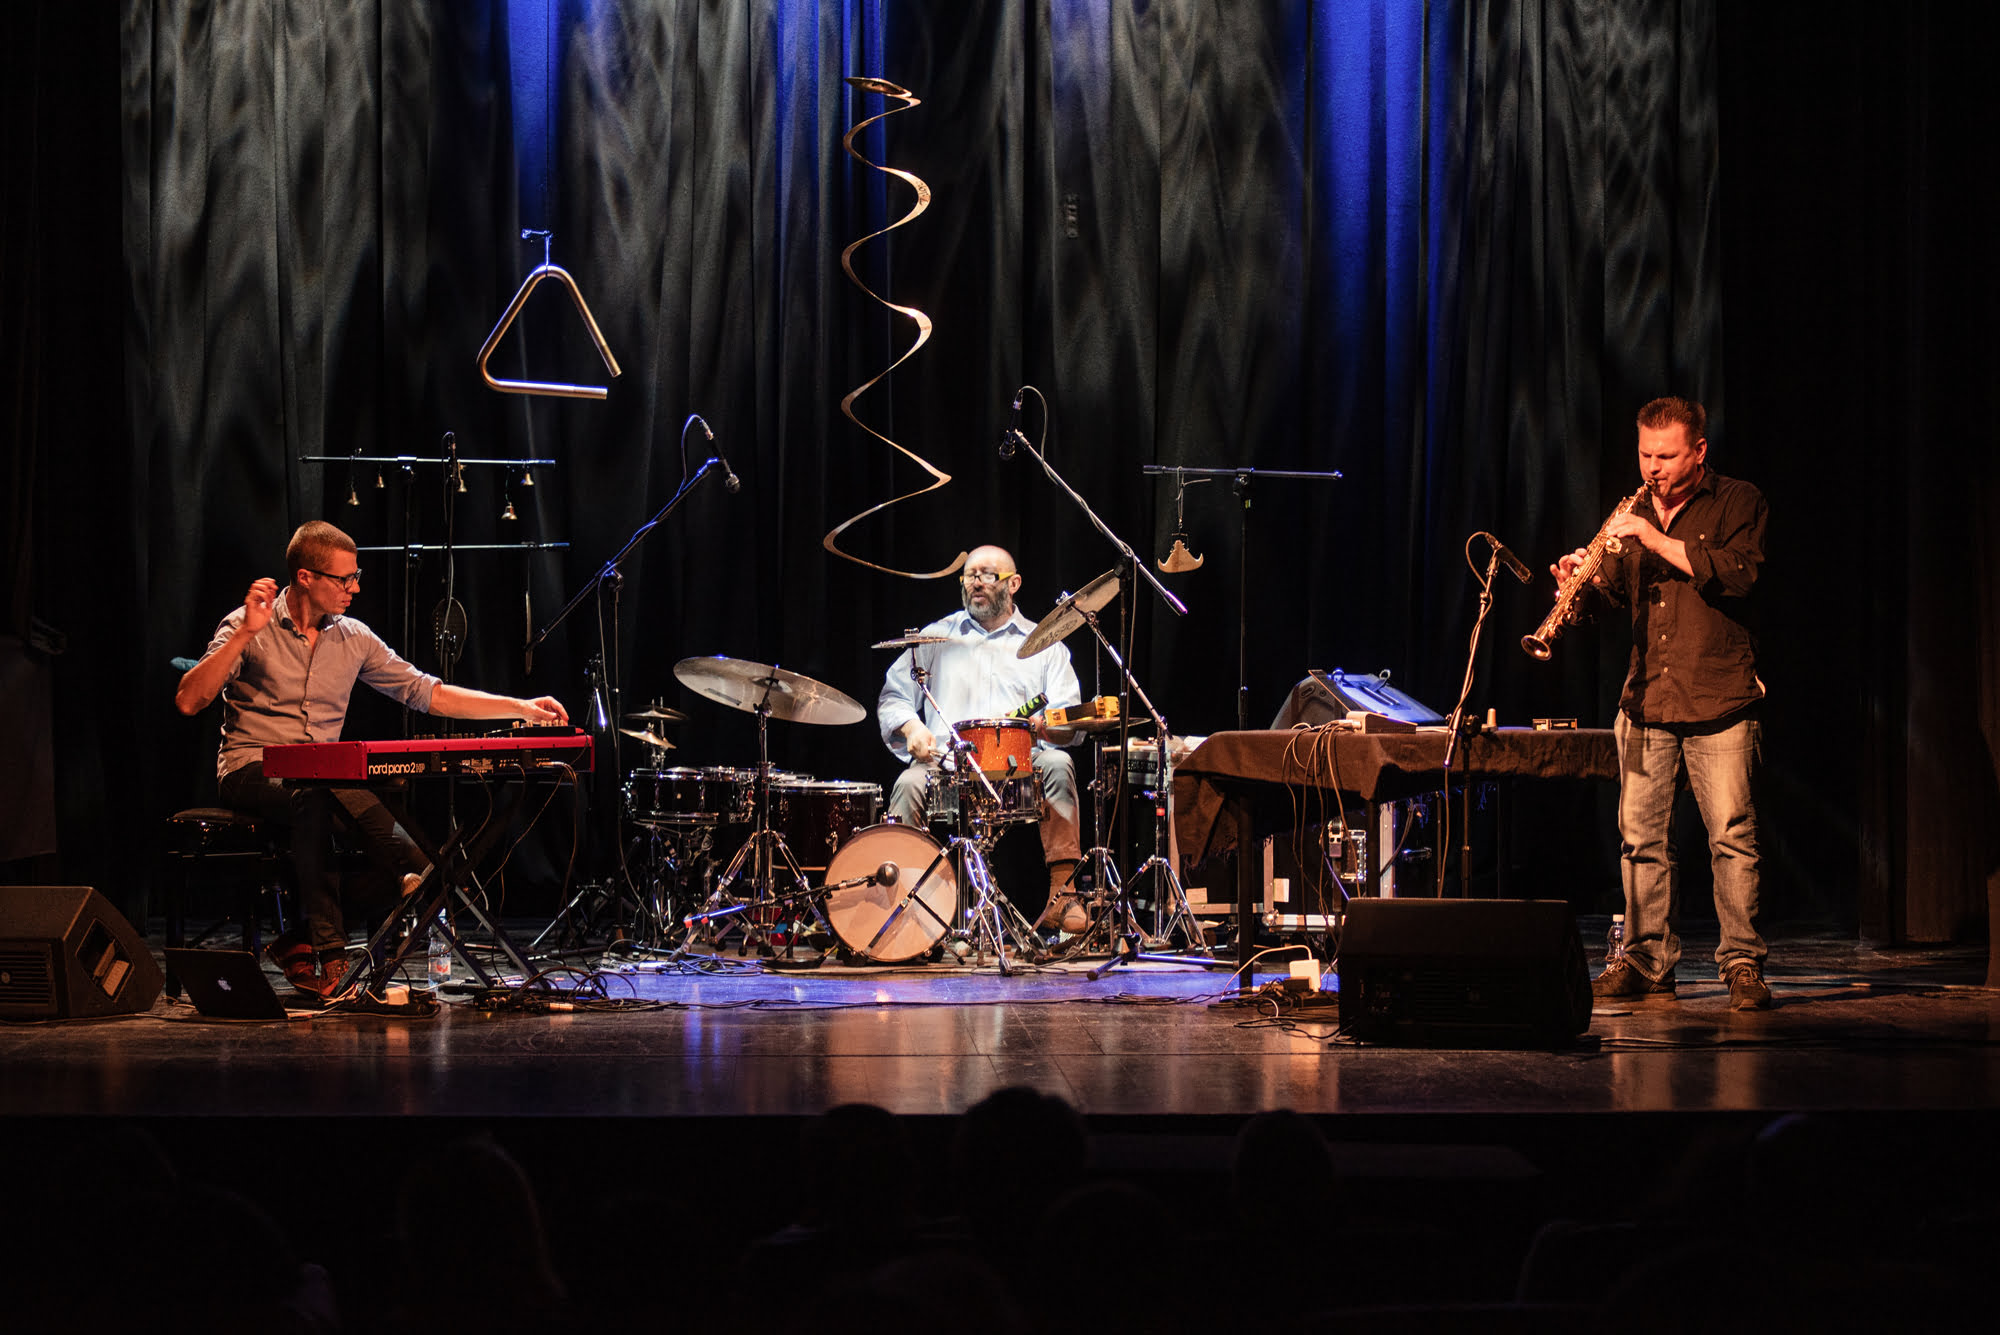 Zdjęcie kolorowe ze sceny, podczas koncertu. Przedstawia trzech muzyków:, od lewej strony siedzi pierwszy przy klawiszach, w środku